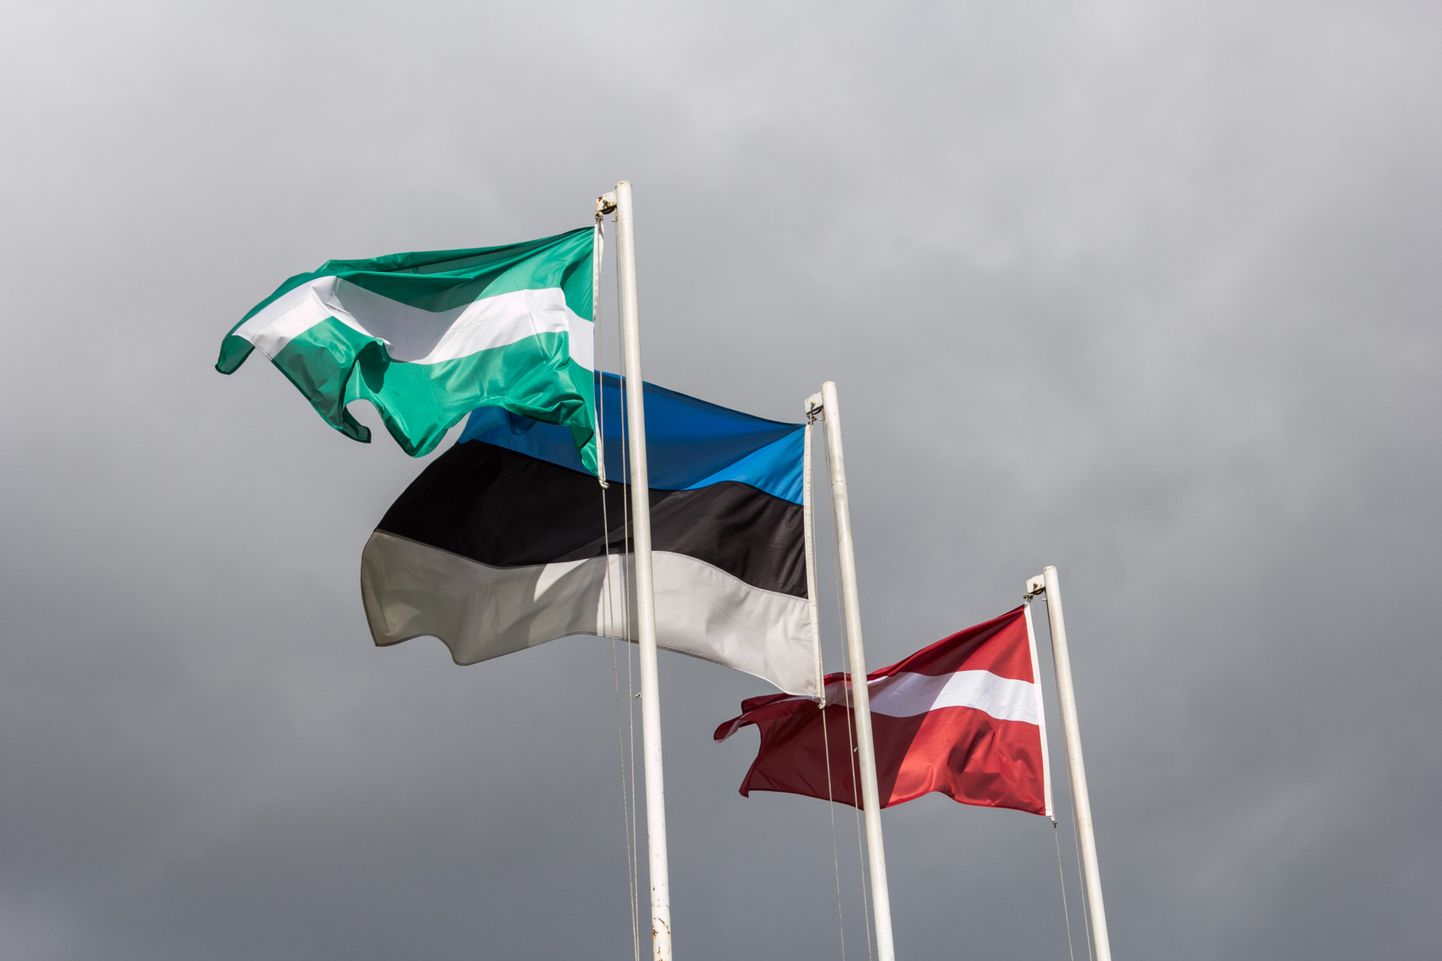 Siin pildil on koos Eesti ja Läti riigilipuga veel Valga linna lipp.